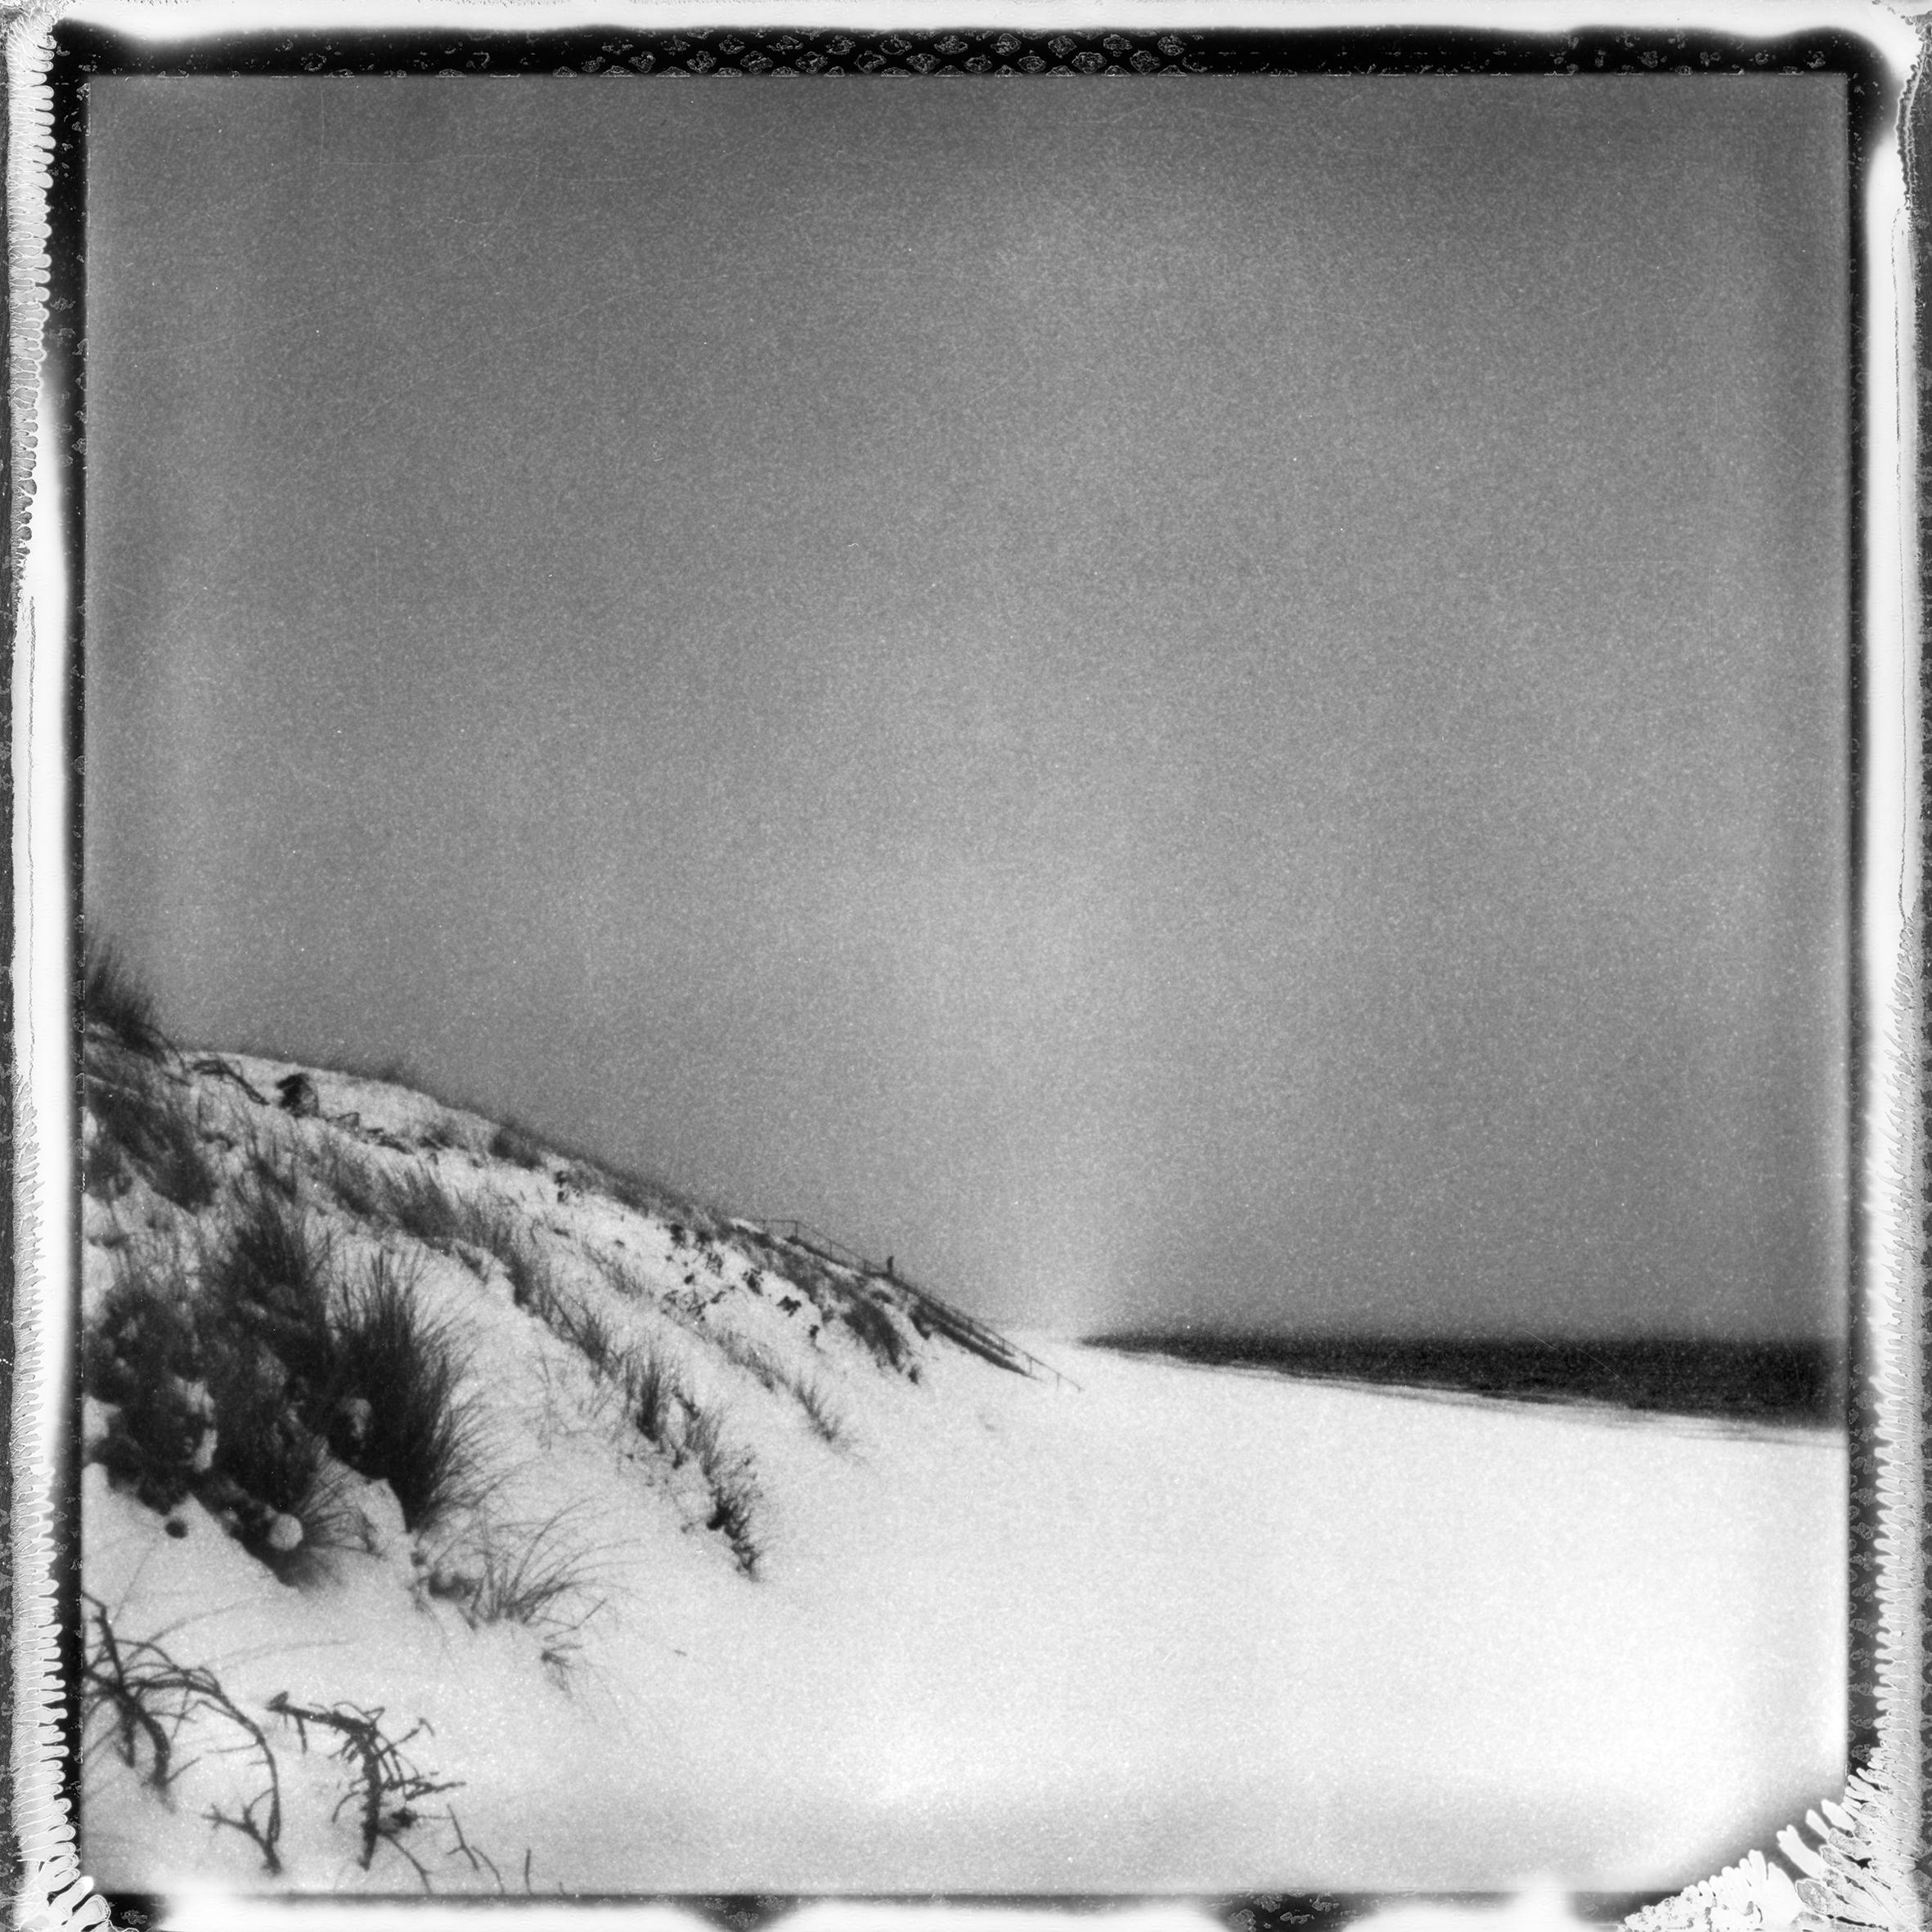 Landscape Photograph Ugne Pouwell - 'Frozen beach #2' - photographie de paysage analogique en noir et blanc